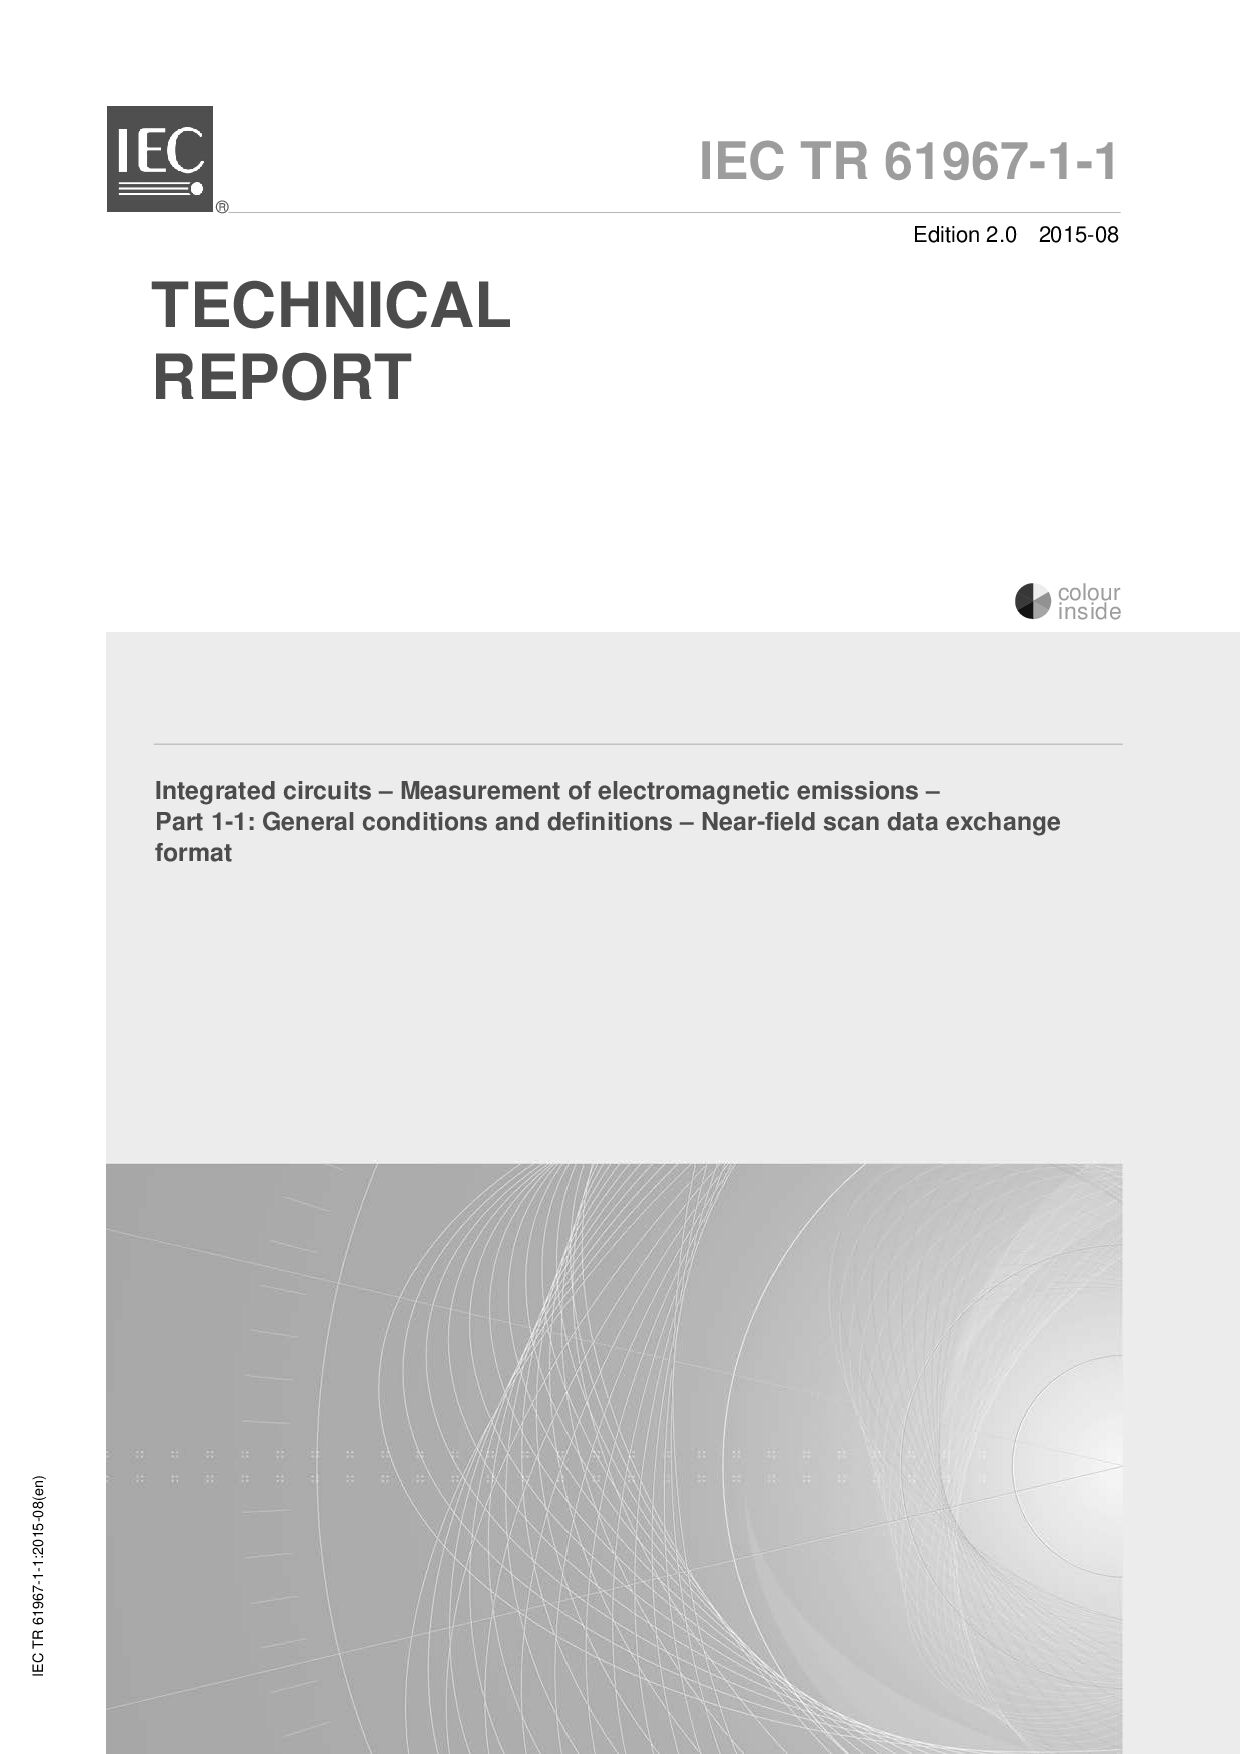 IEC TR 61967-1-1:2015